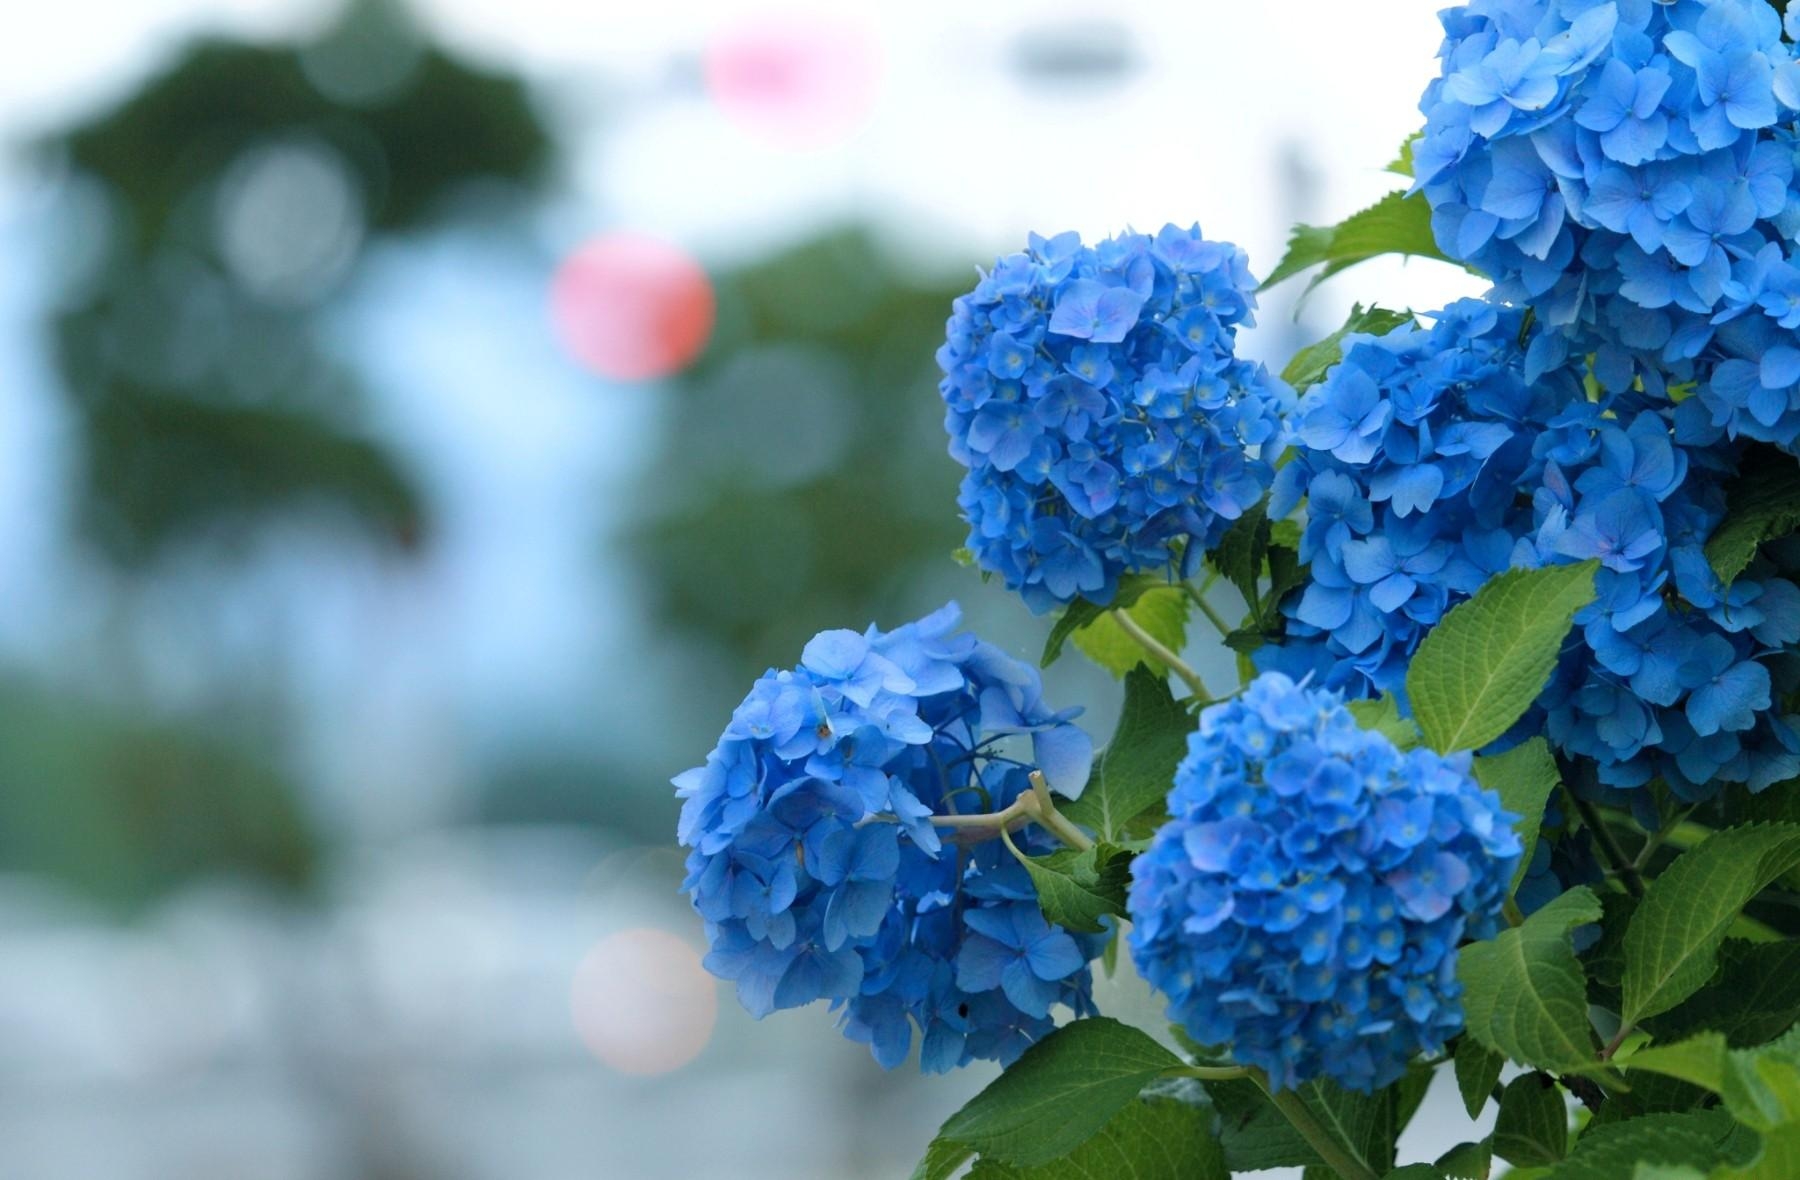 hydrangea, bloom, blue Wallpaper, HD Flowers 4K Wallpapers, Images